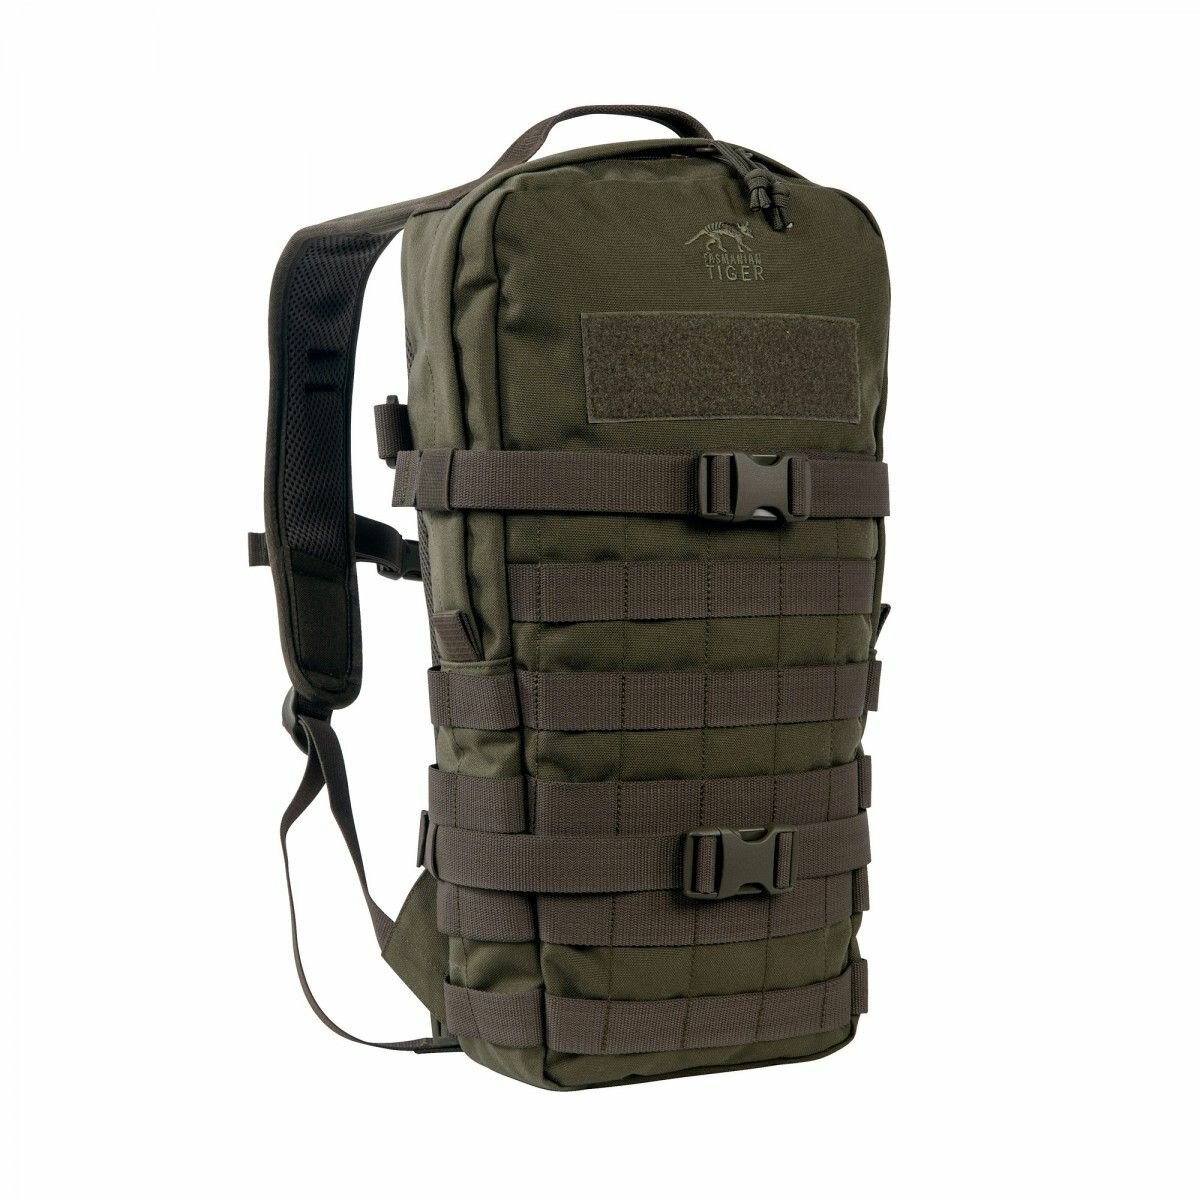 Тактический универсальный рюкзак Tasmanian Tiger Essential Pack MKII (олива)